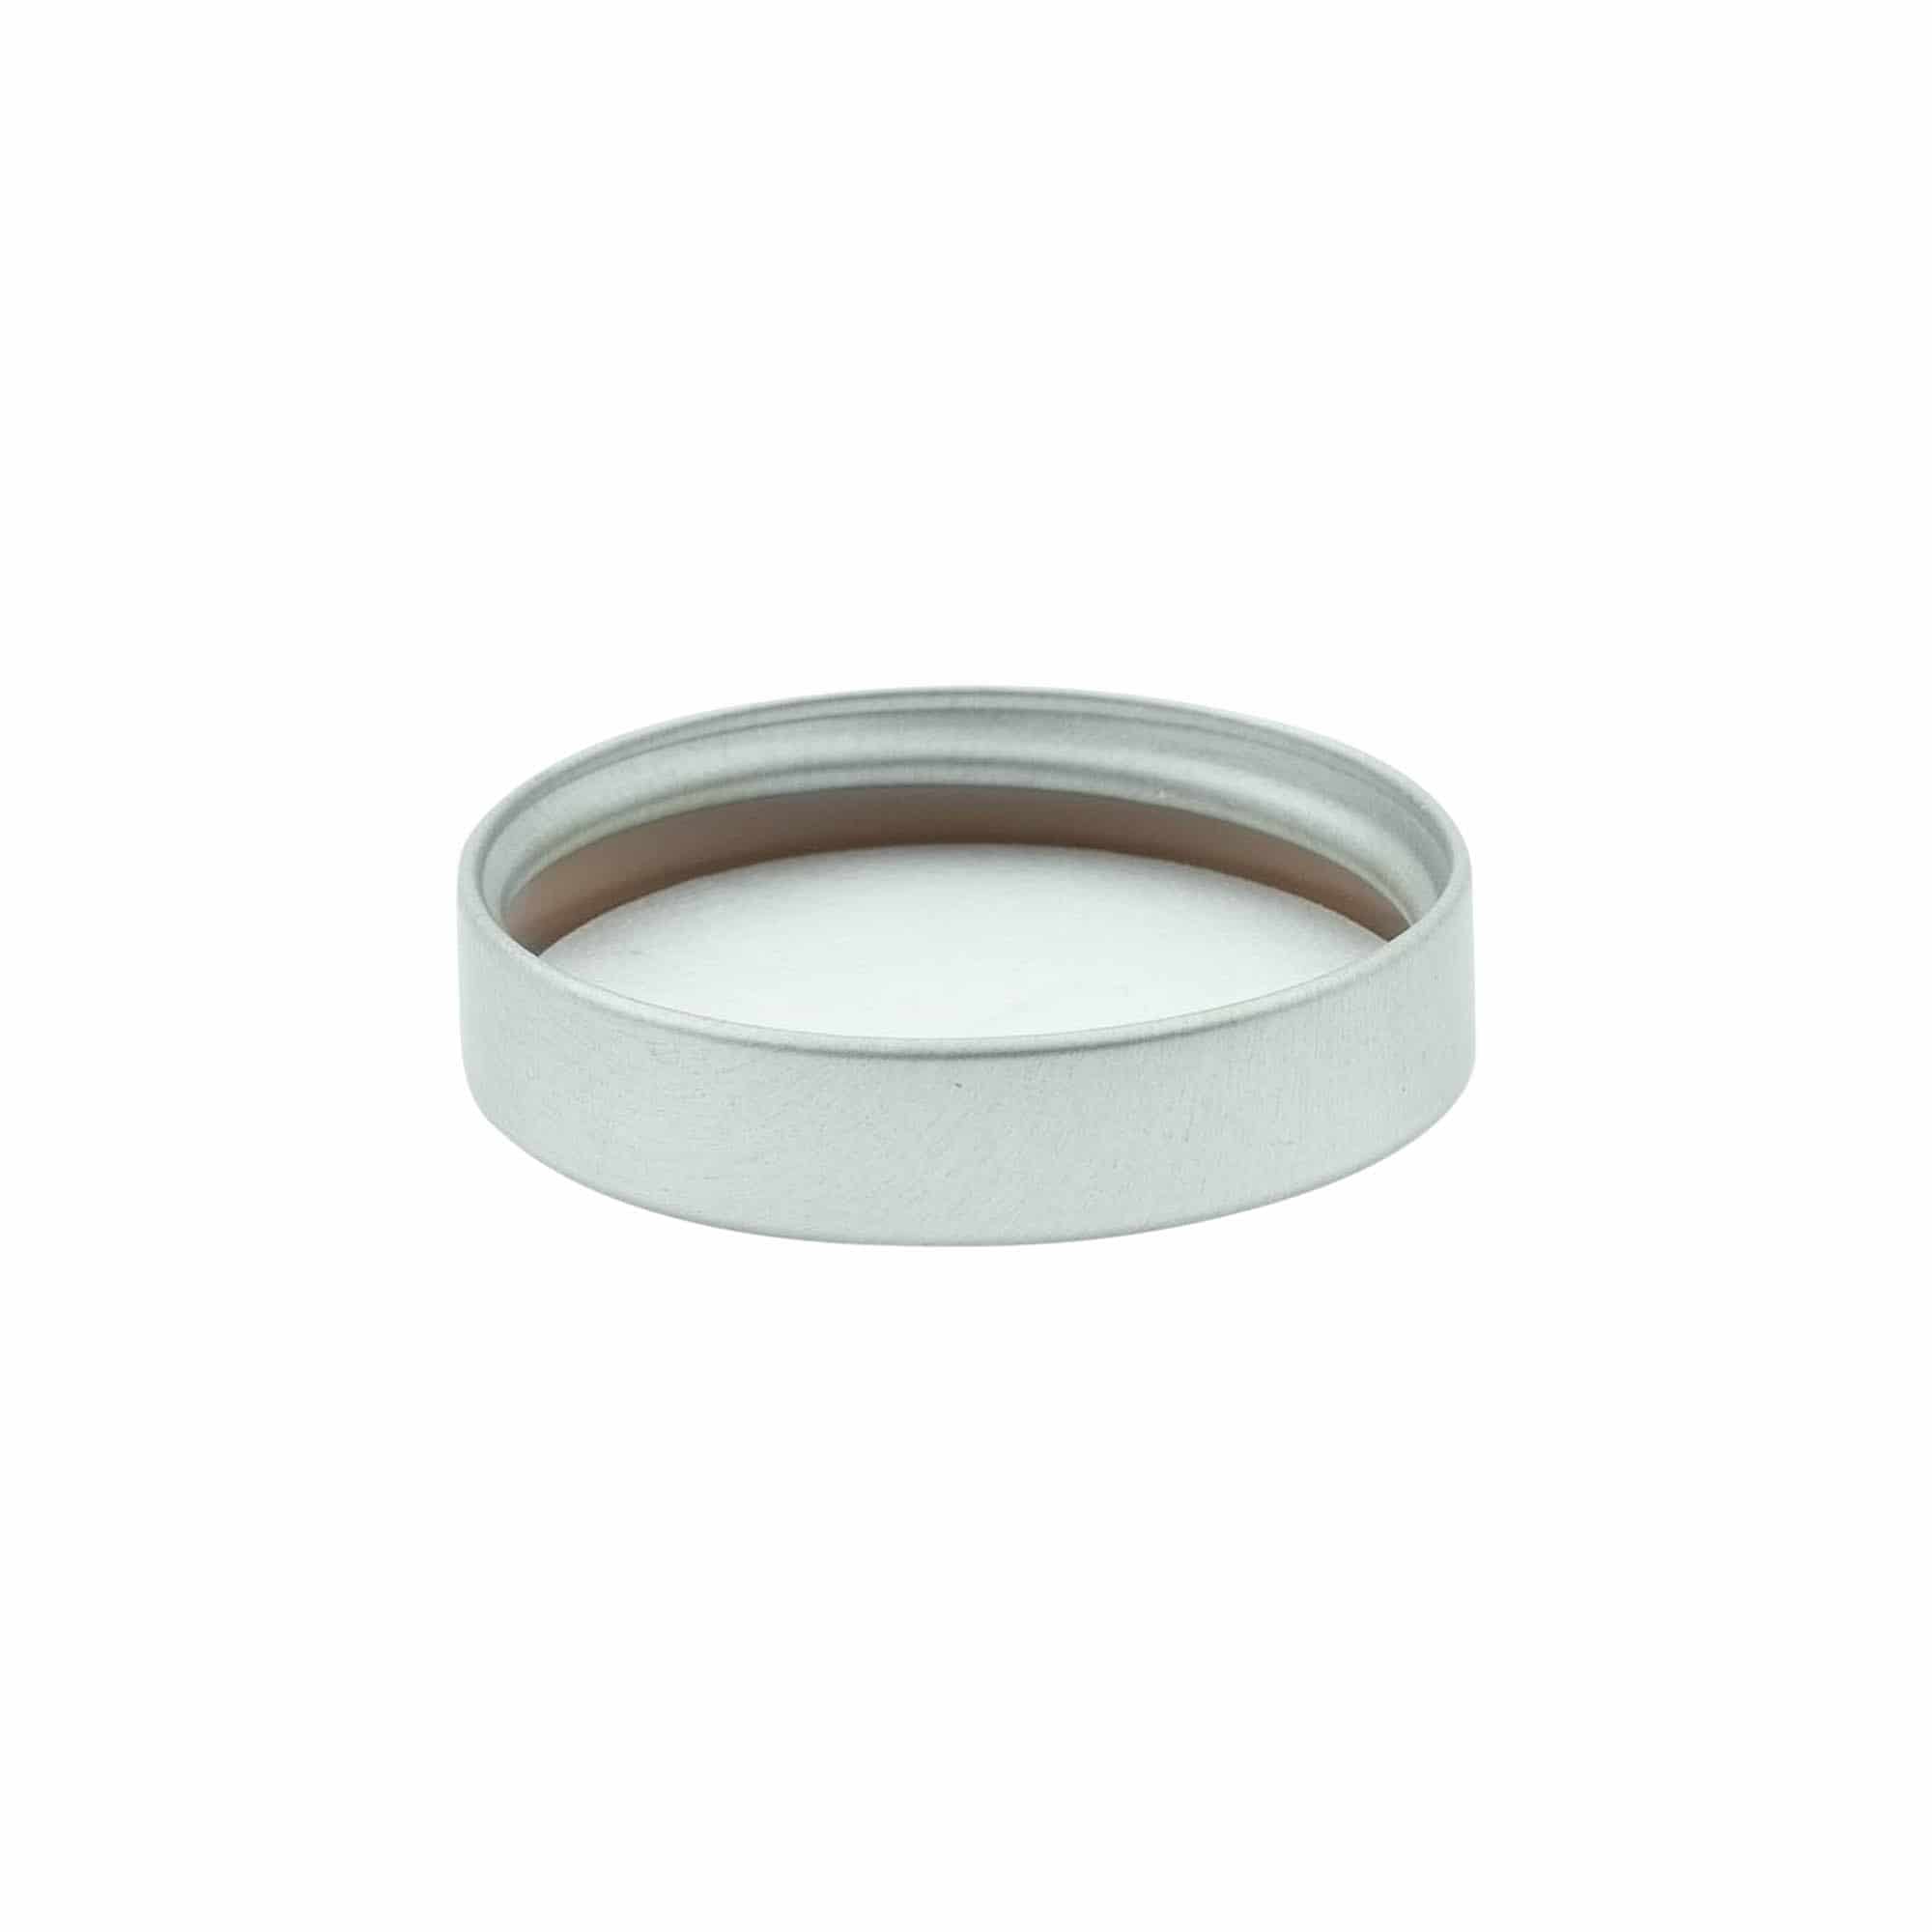 Šroubovací uzávěr, kov, stříbrný, pro ústí: GPI 45/400